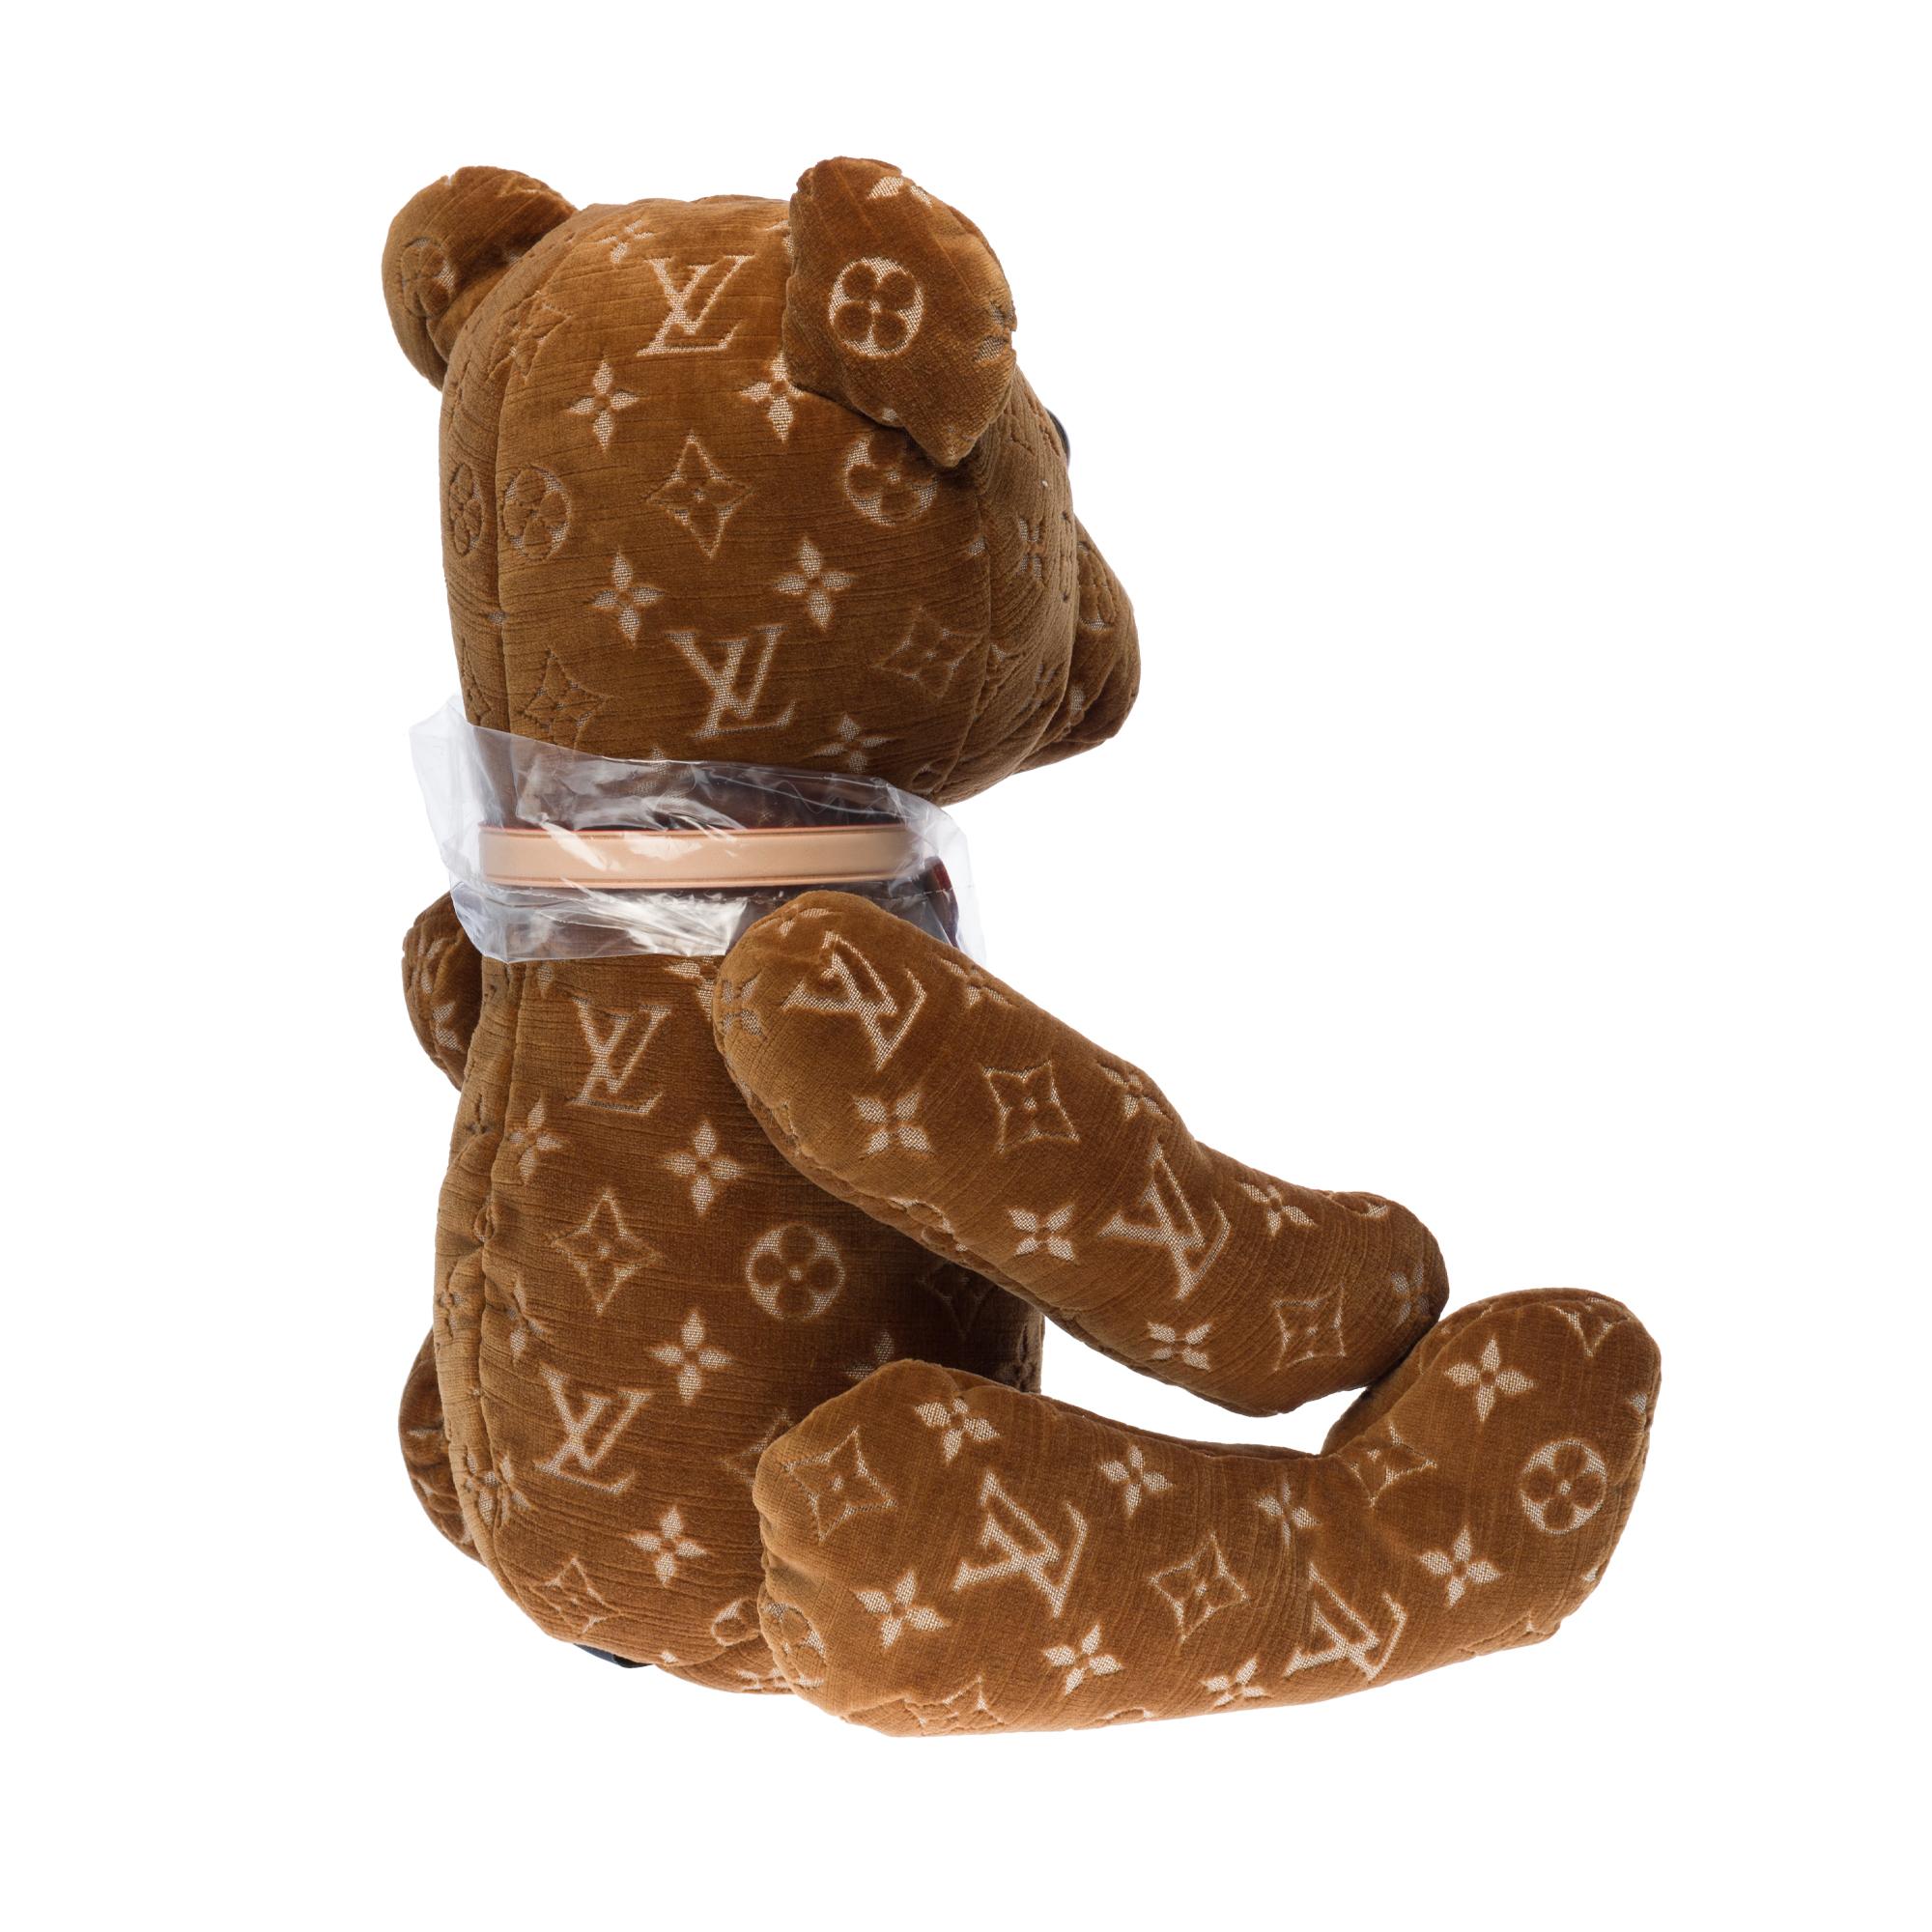 Brand New  Louis Vuitton Collectible Teddy Bear DouDou  For Sale 1